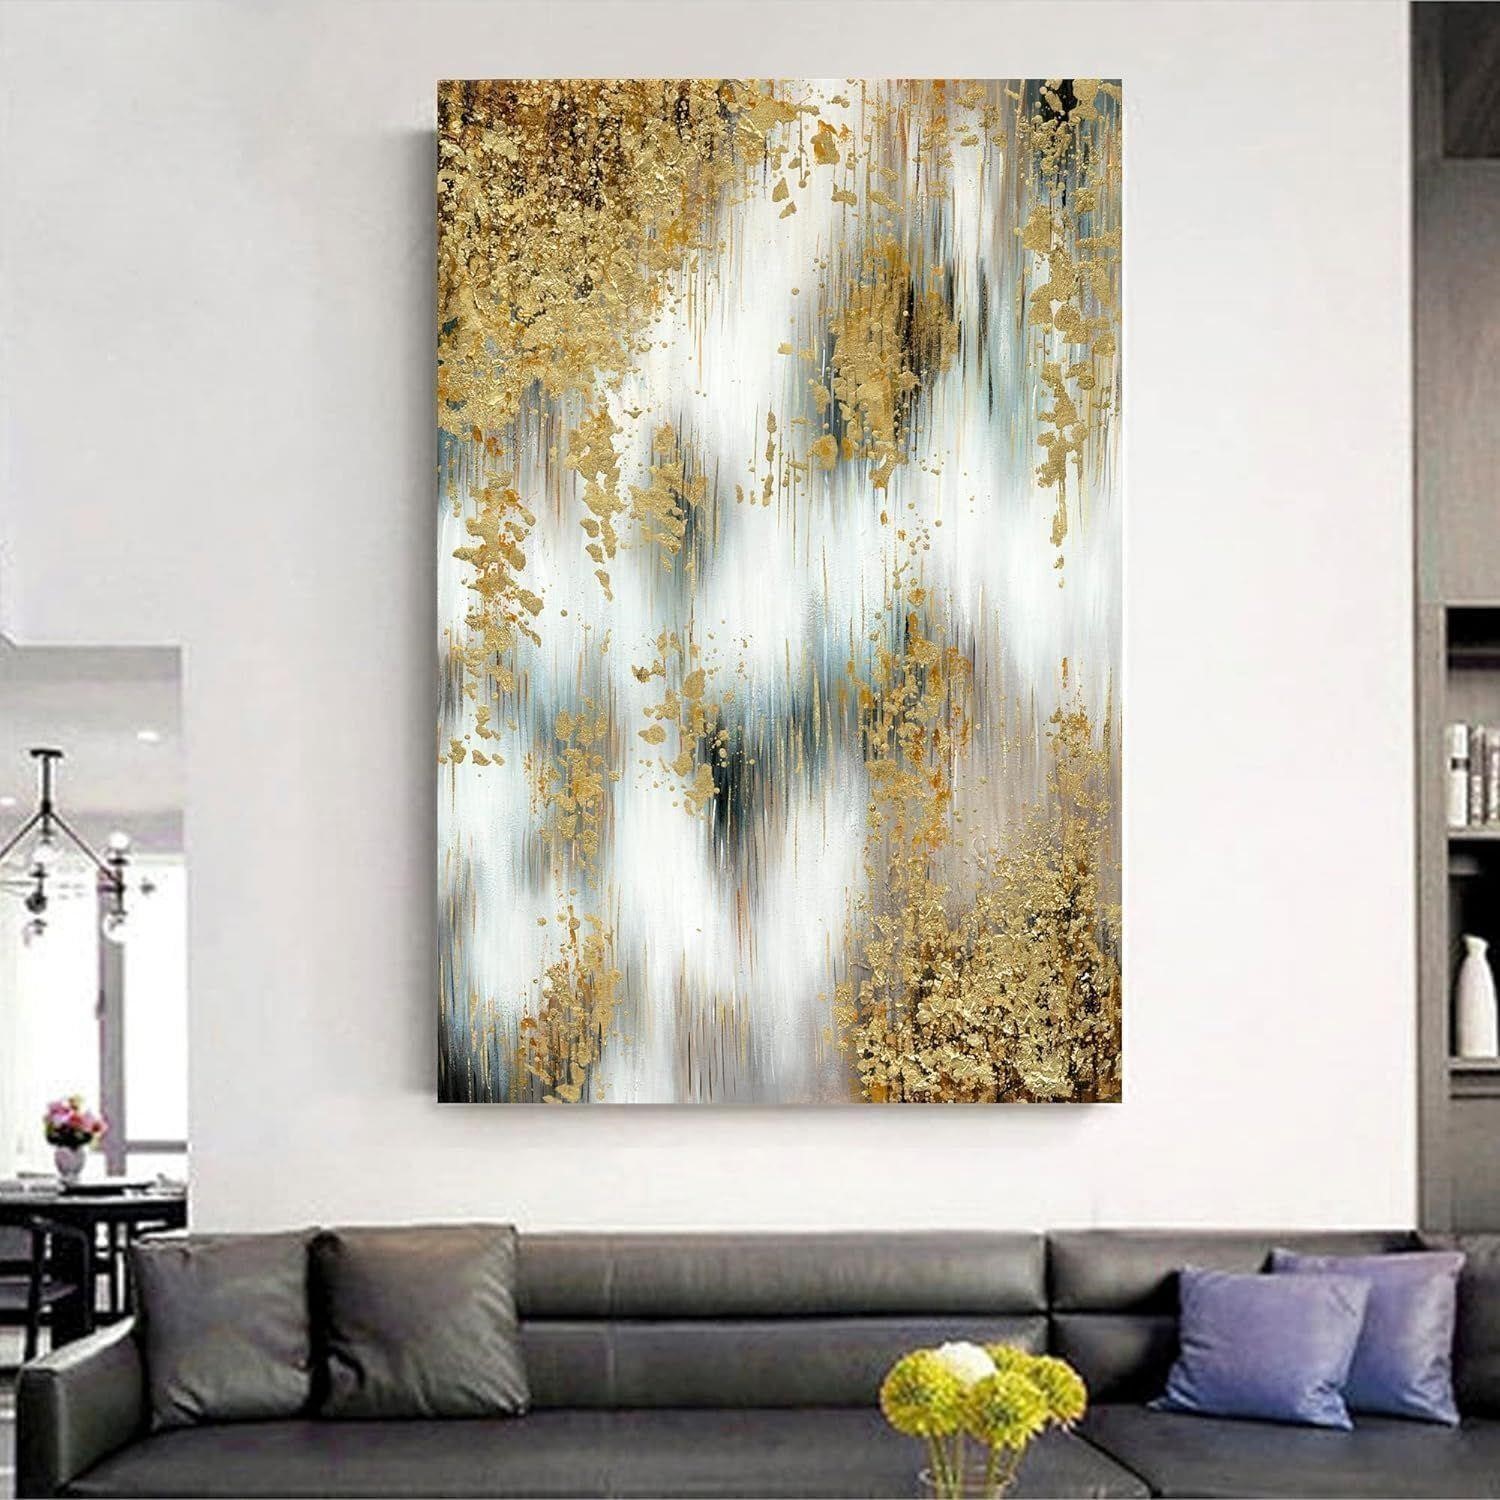 NEW $60 Golden Abstract Wall Art